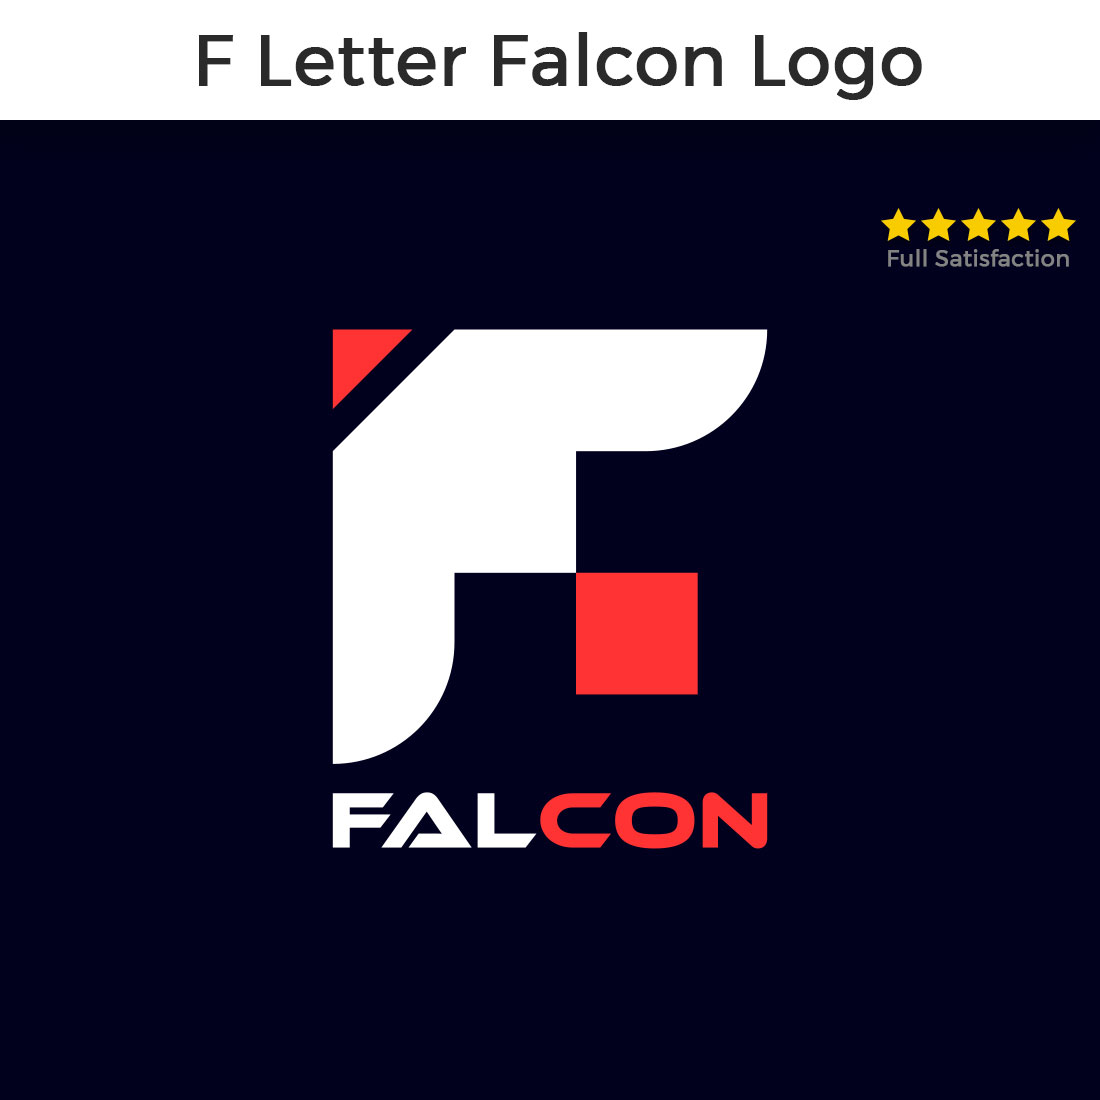 F Lettter Falcon Eagle Logo Design cover image.